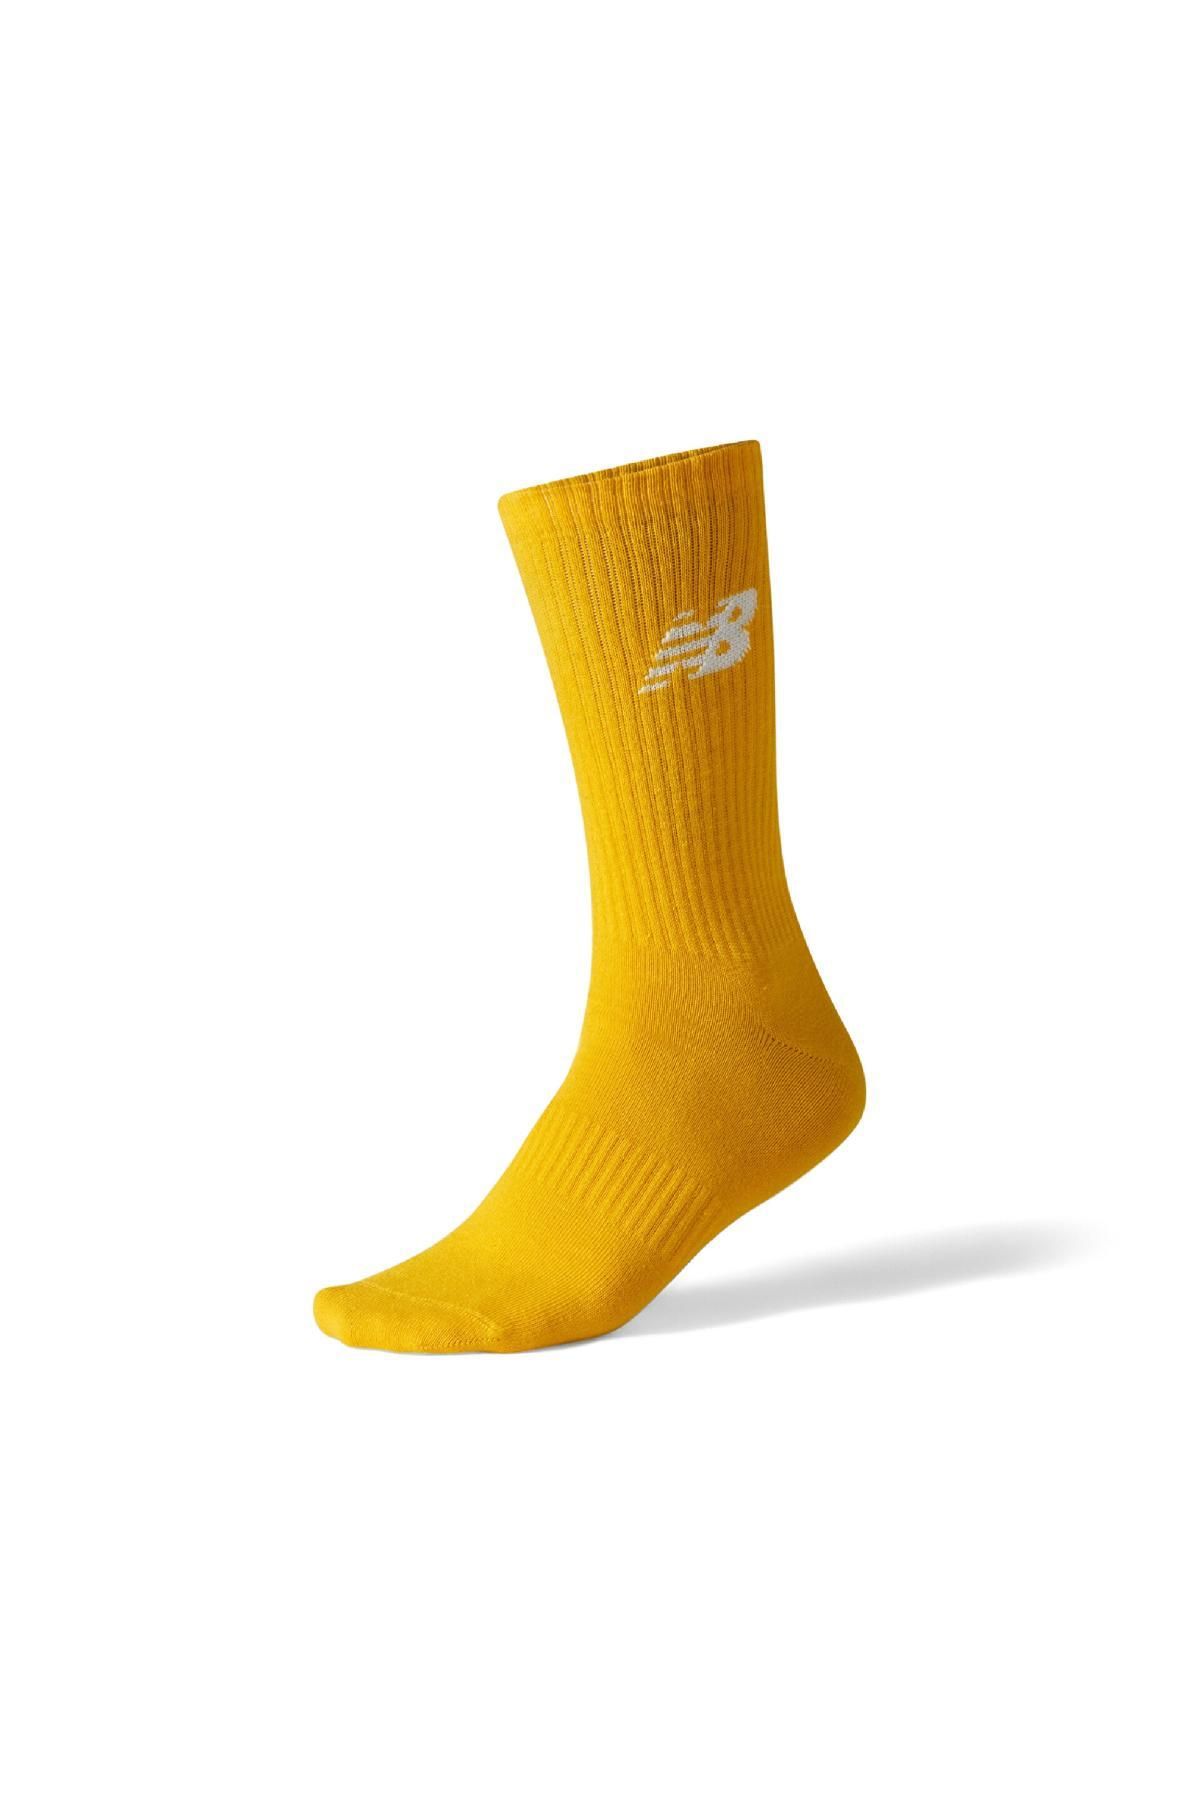 New Balance Ans3206 Nb Lifestyle Çorap Sarı Unisex Çorap